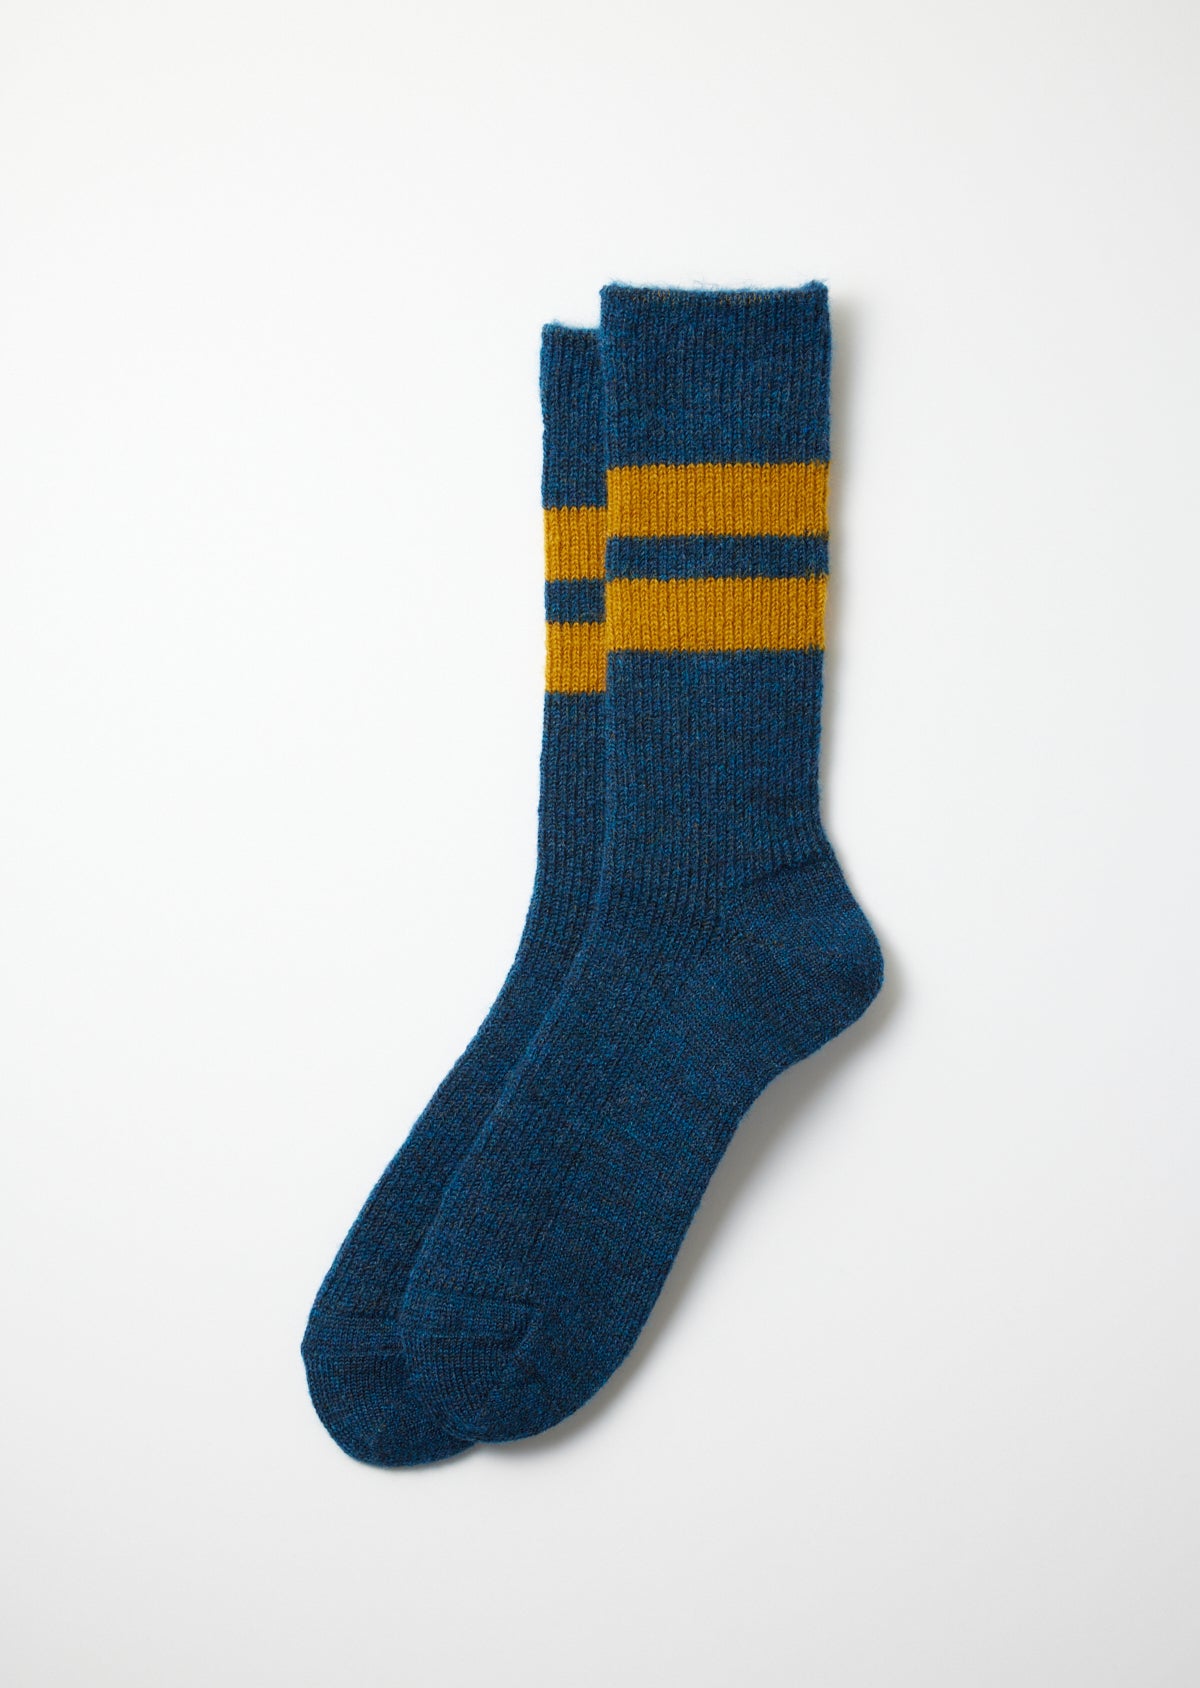 Gewalkte Mohair Socken - dunkelblau